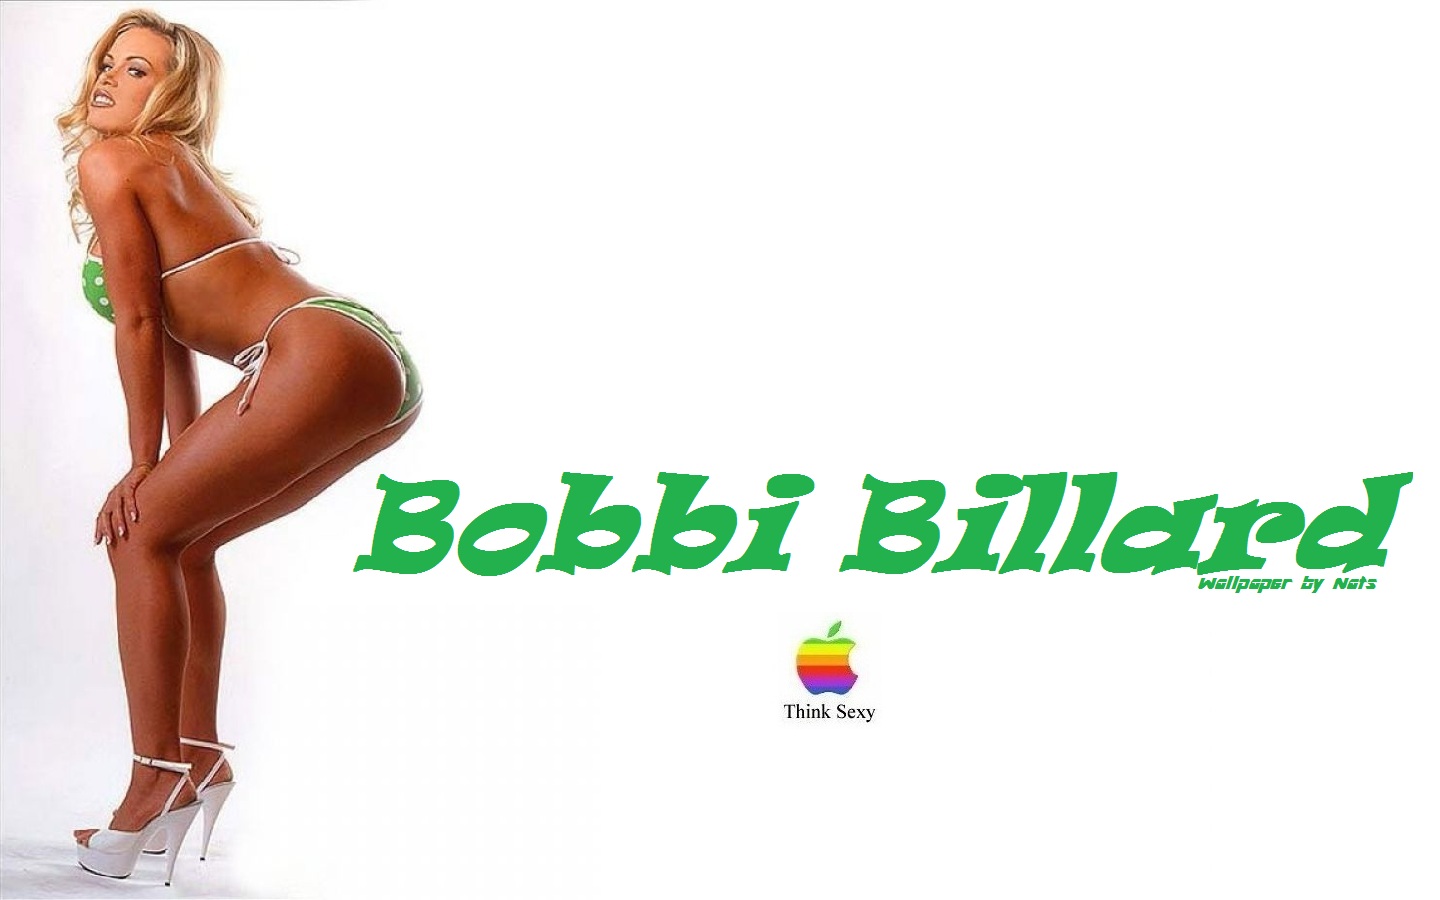 Download HQ Bobbi Billard wallpaper / Celebrities Female / 1440x900